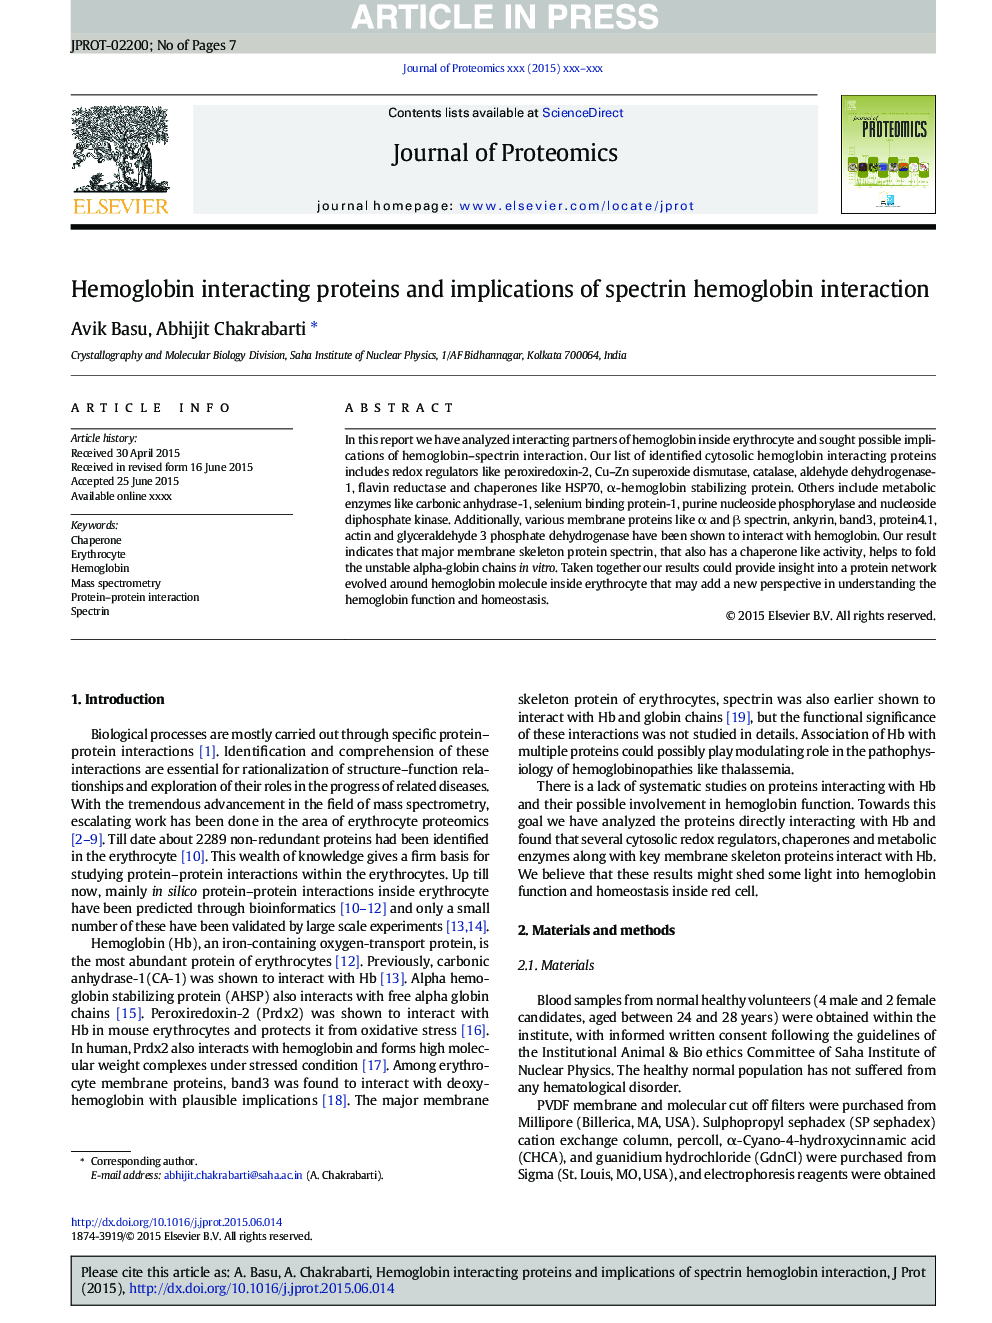 پروتئین های هموگلوبین و پیامدهای هموگلوبین اسپکترونی 